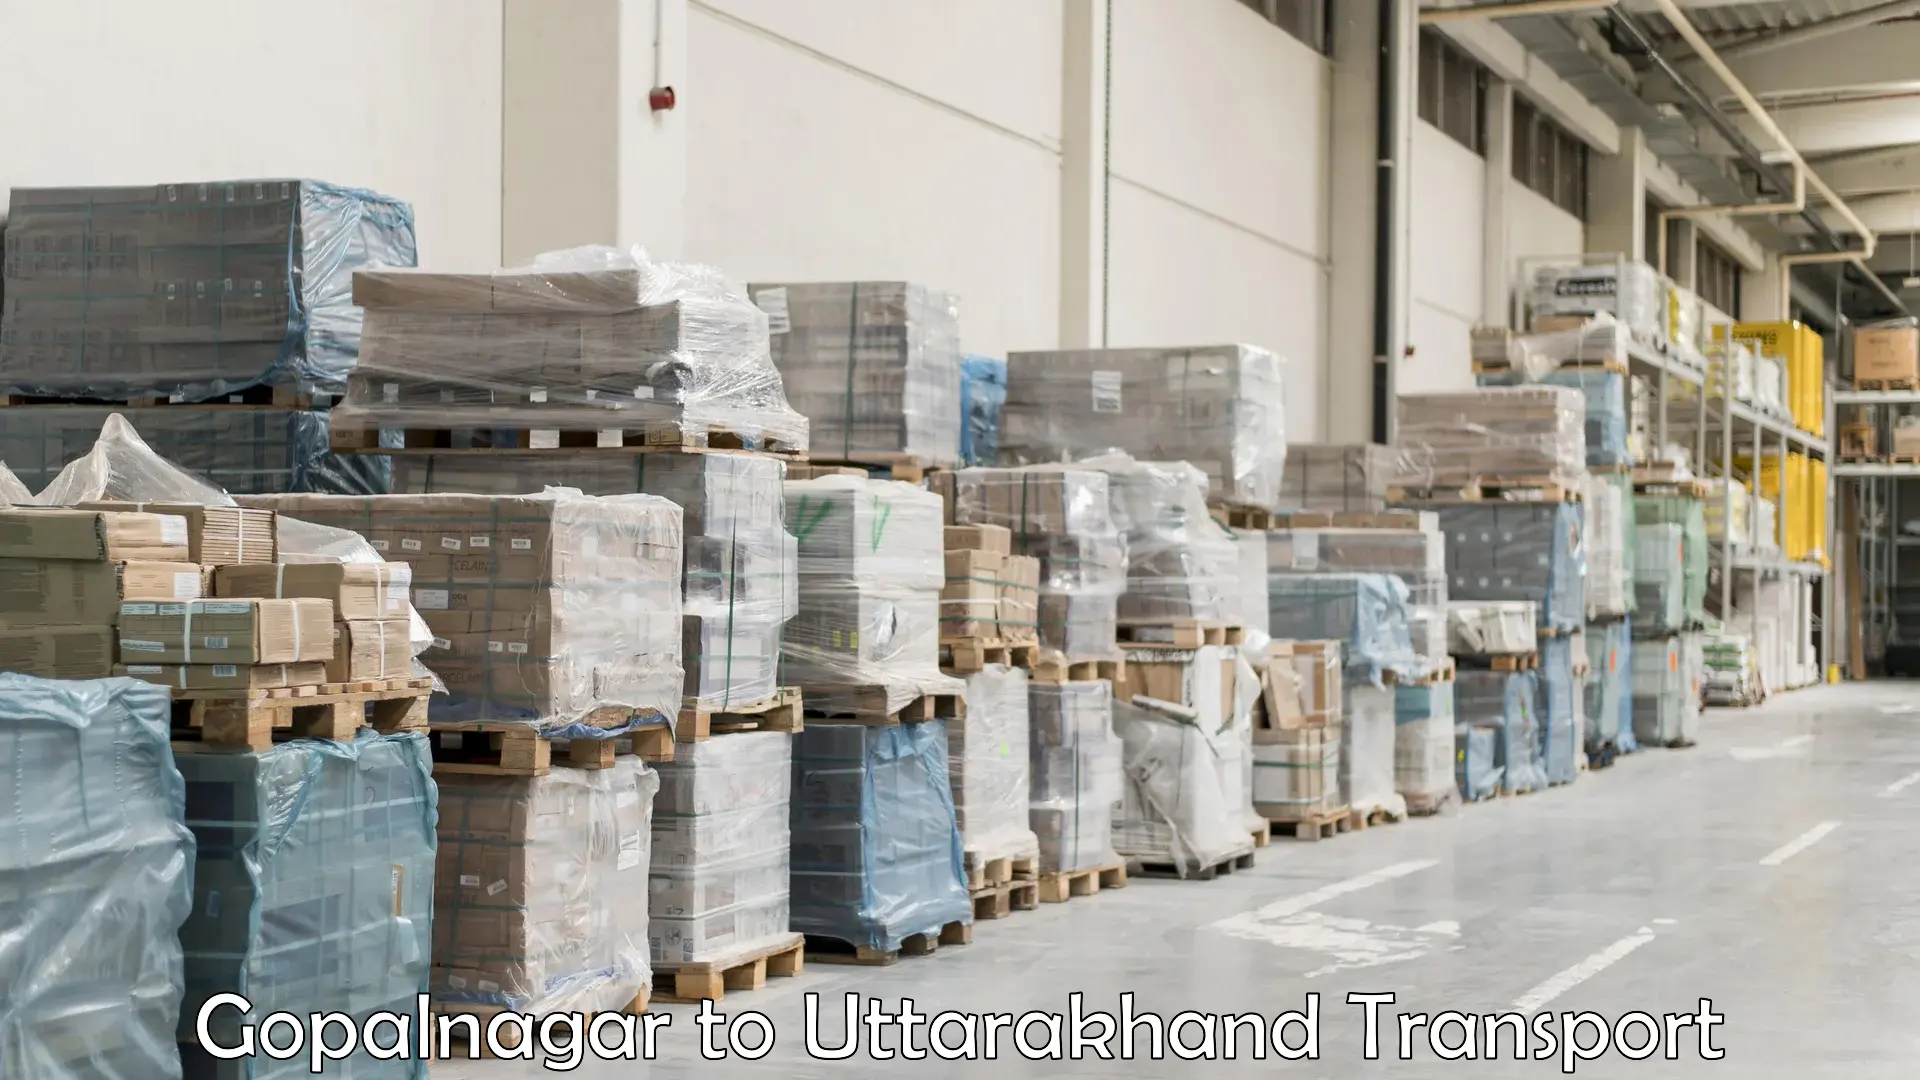 Container transport service Gopalnagar to Uttarakhand